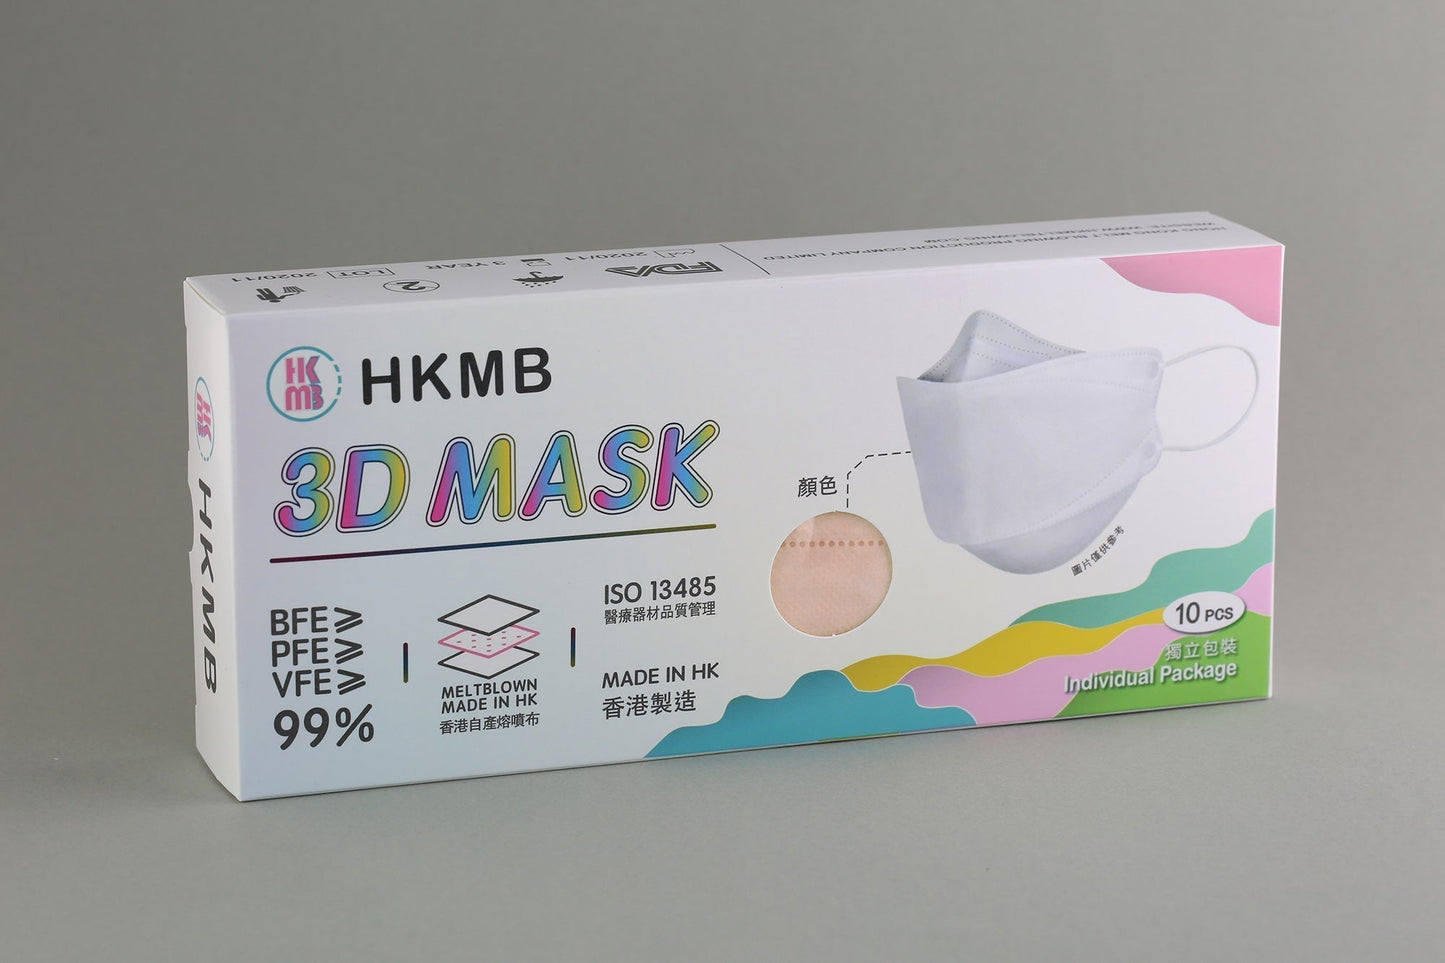 【現貨】Spring Flower 3D Mask HKMB VFE99 10pcs/box【Made in Hong Kong】